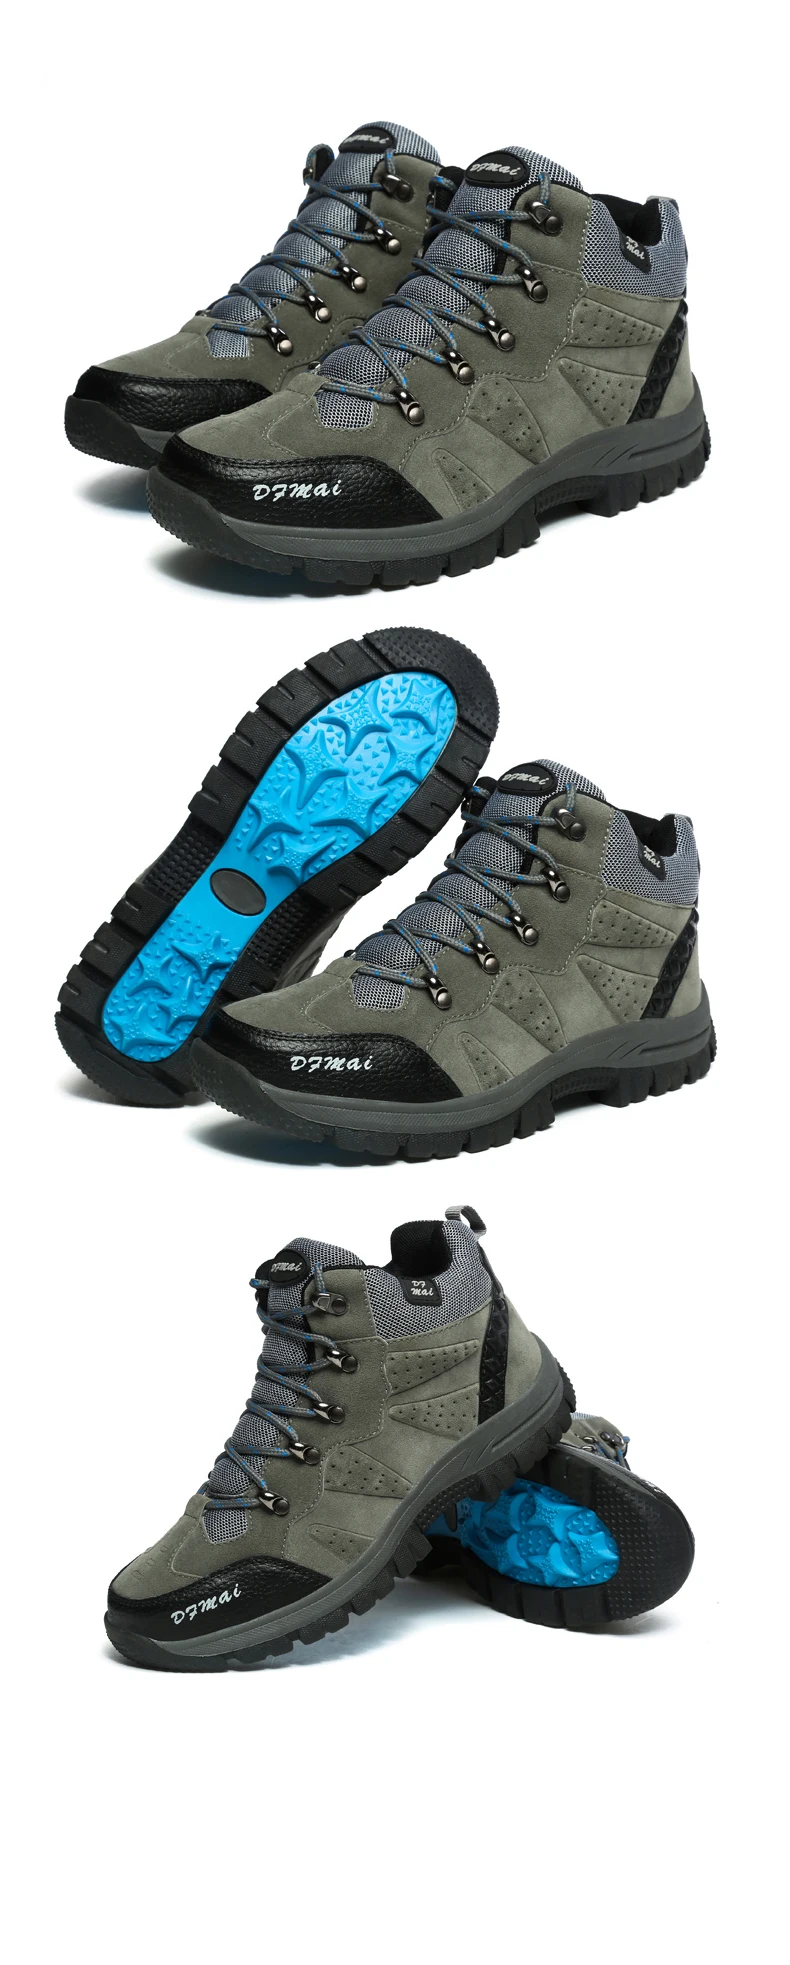 Новые зимние сапоги Для мужчин с теплые меховые зимние ботинки светильник Водонепроницаемый дышащая мужская обувь высокие ботильоны на резиновой подошве, обувь больших размеров 48